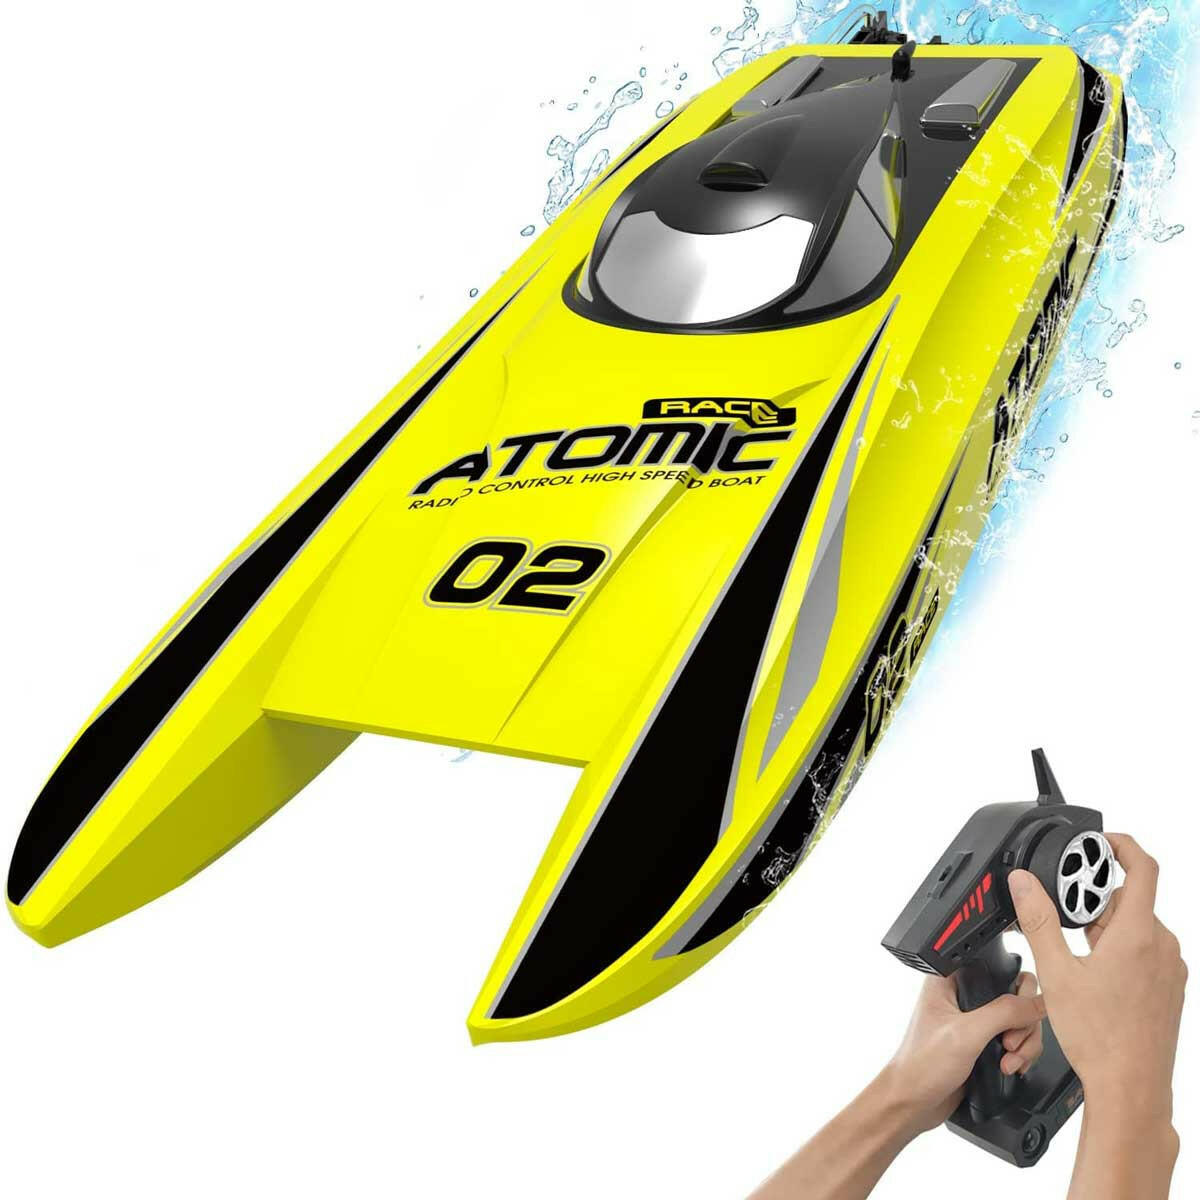 Bateau RC télécommandé Atomic 45 mph à grande vitesse Lake Racing (792-4) RTR